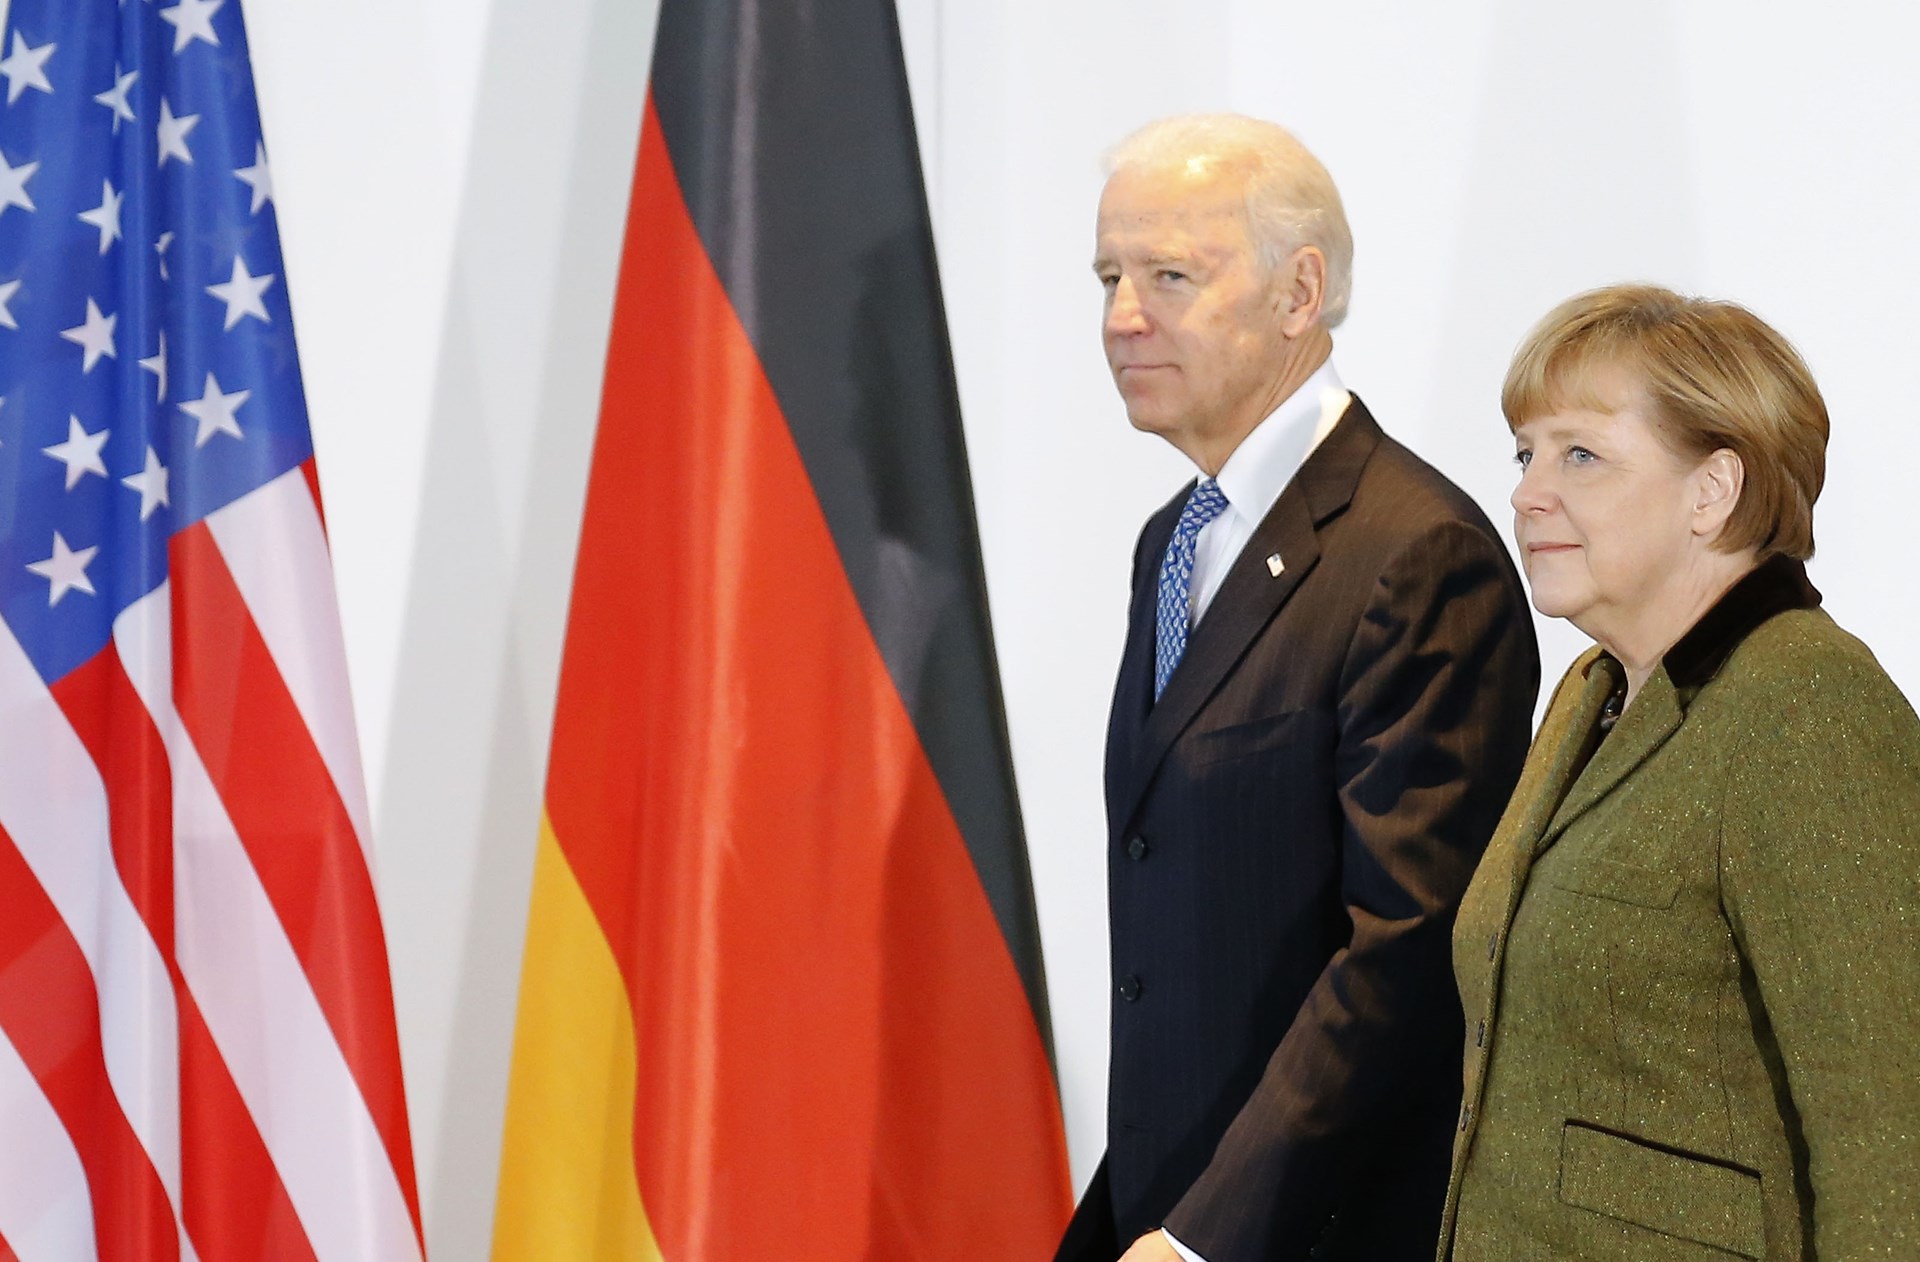 Μέρκελ: Προσκάλεσε τον Μπάιντεν στη Γερμανία όταν το επιτρέψει ο κορονοϊός